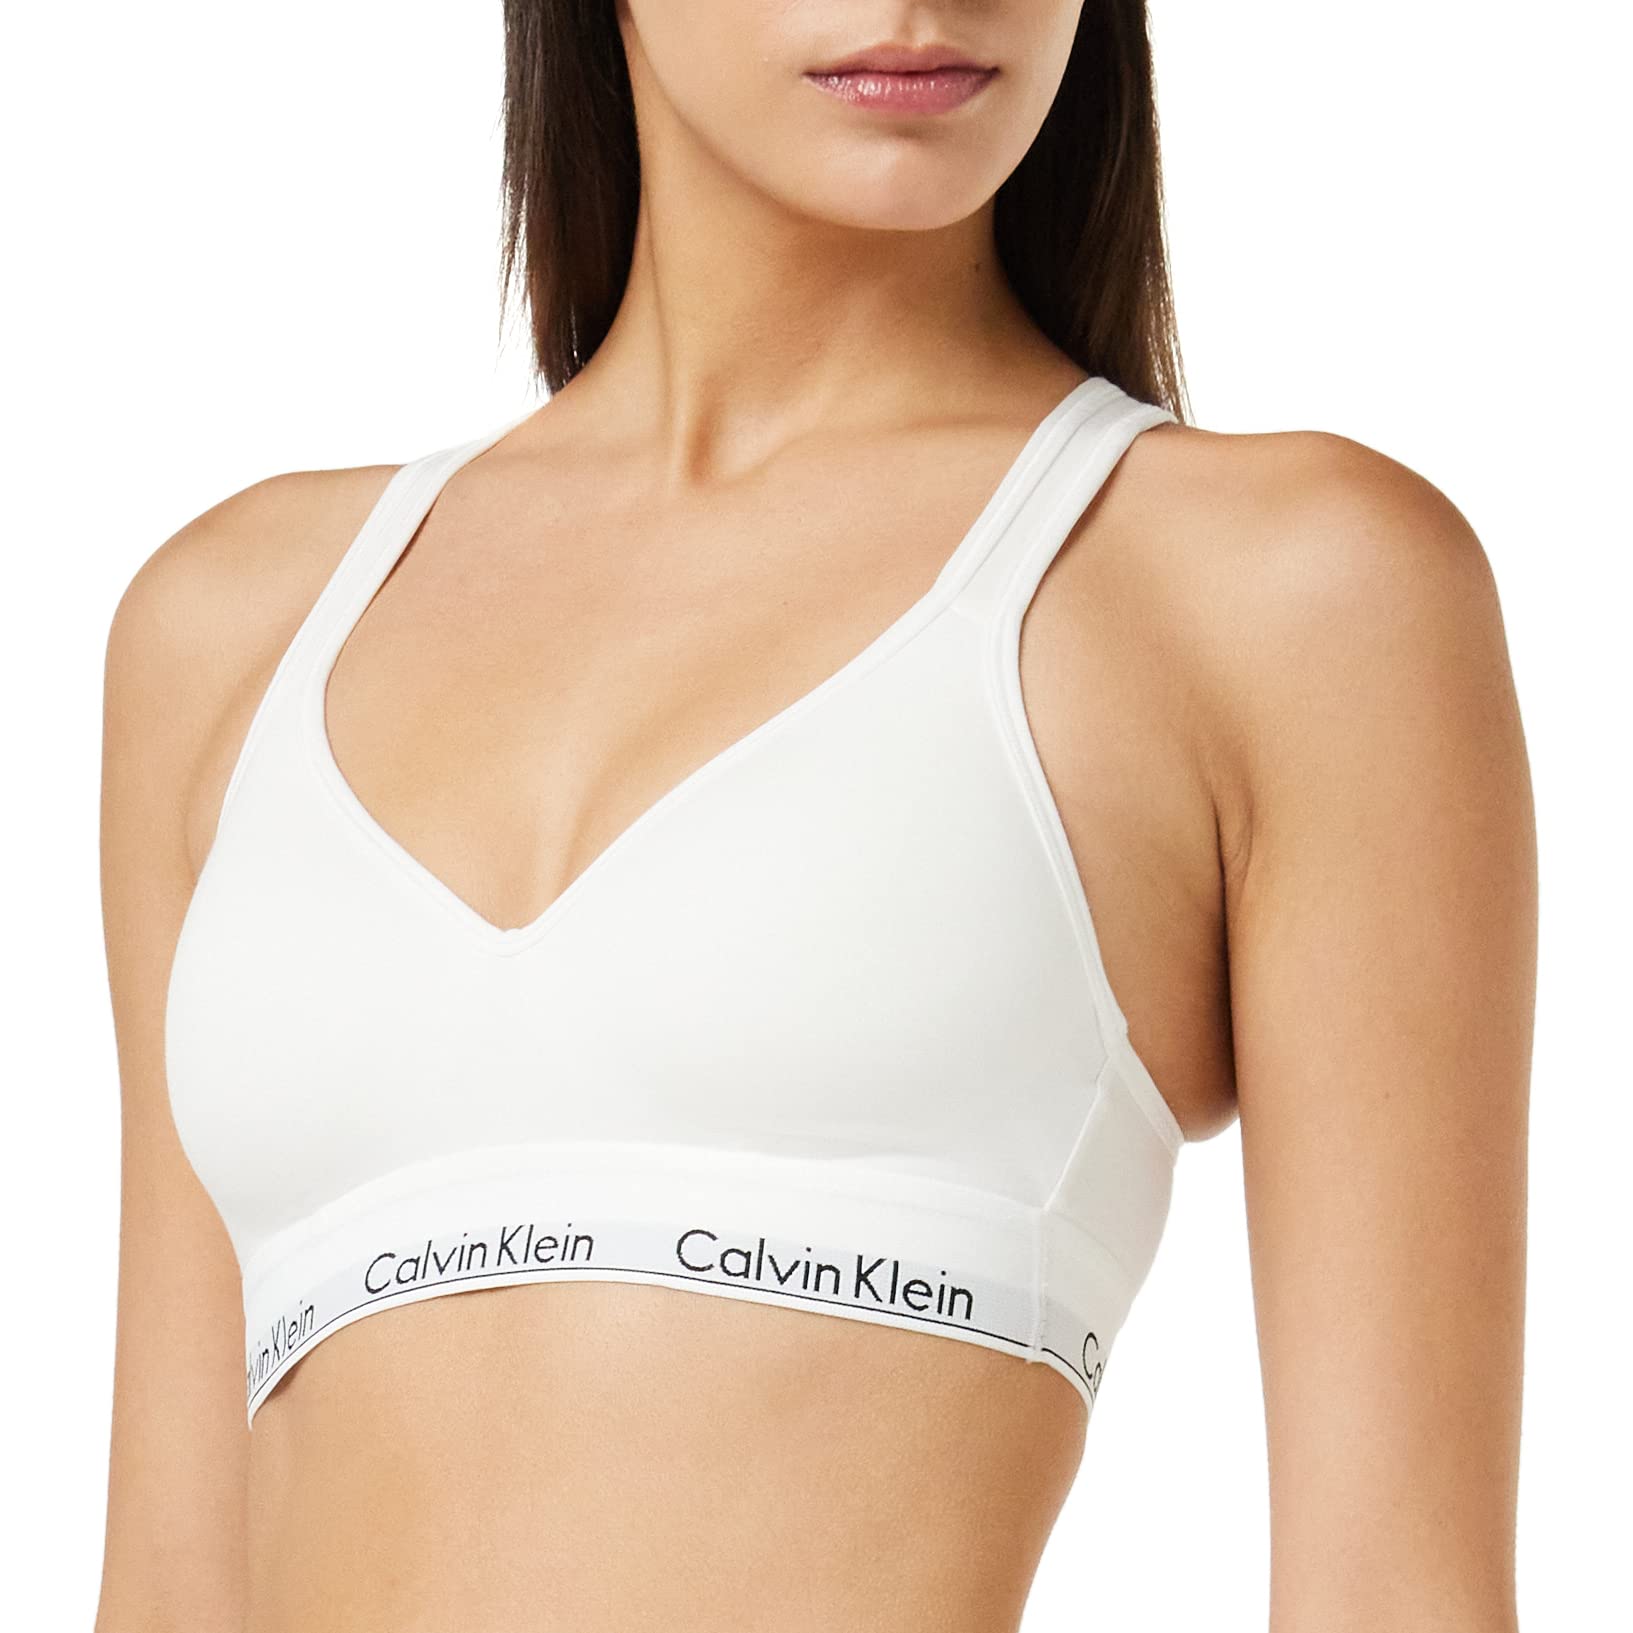 Calvin Klein Damen BH Bralette Lift Gepolstert , Weiß (White), XS